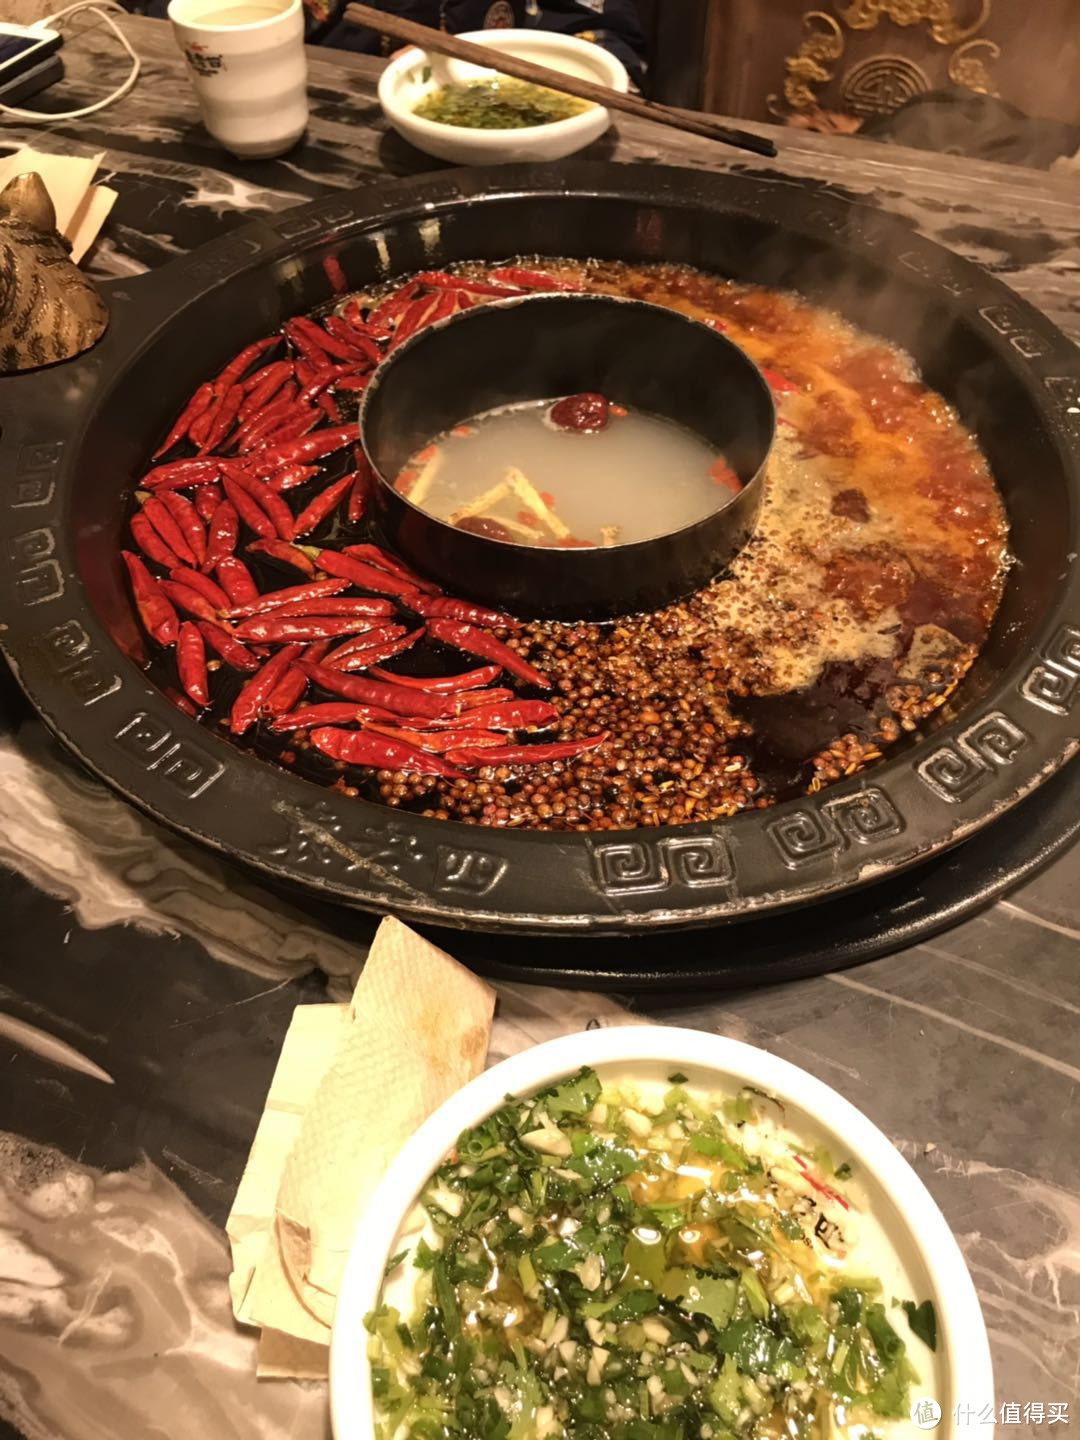 袁老四家的虎头锅，开始的时候忘了问有没有里面红汤外面白汤的锅。